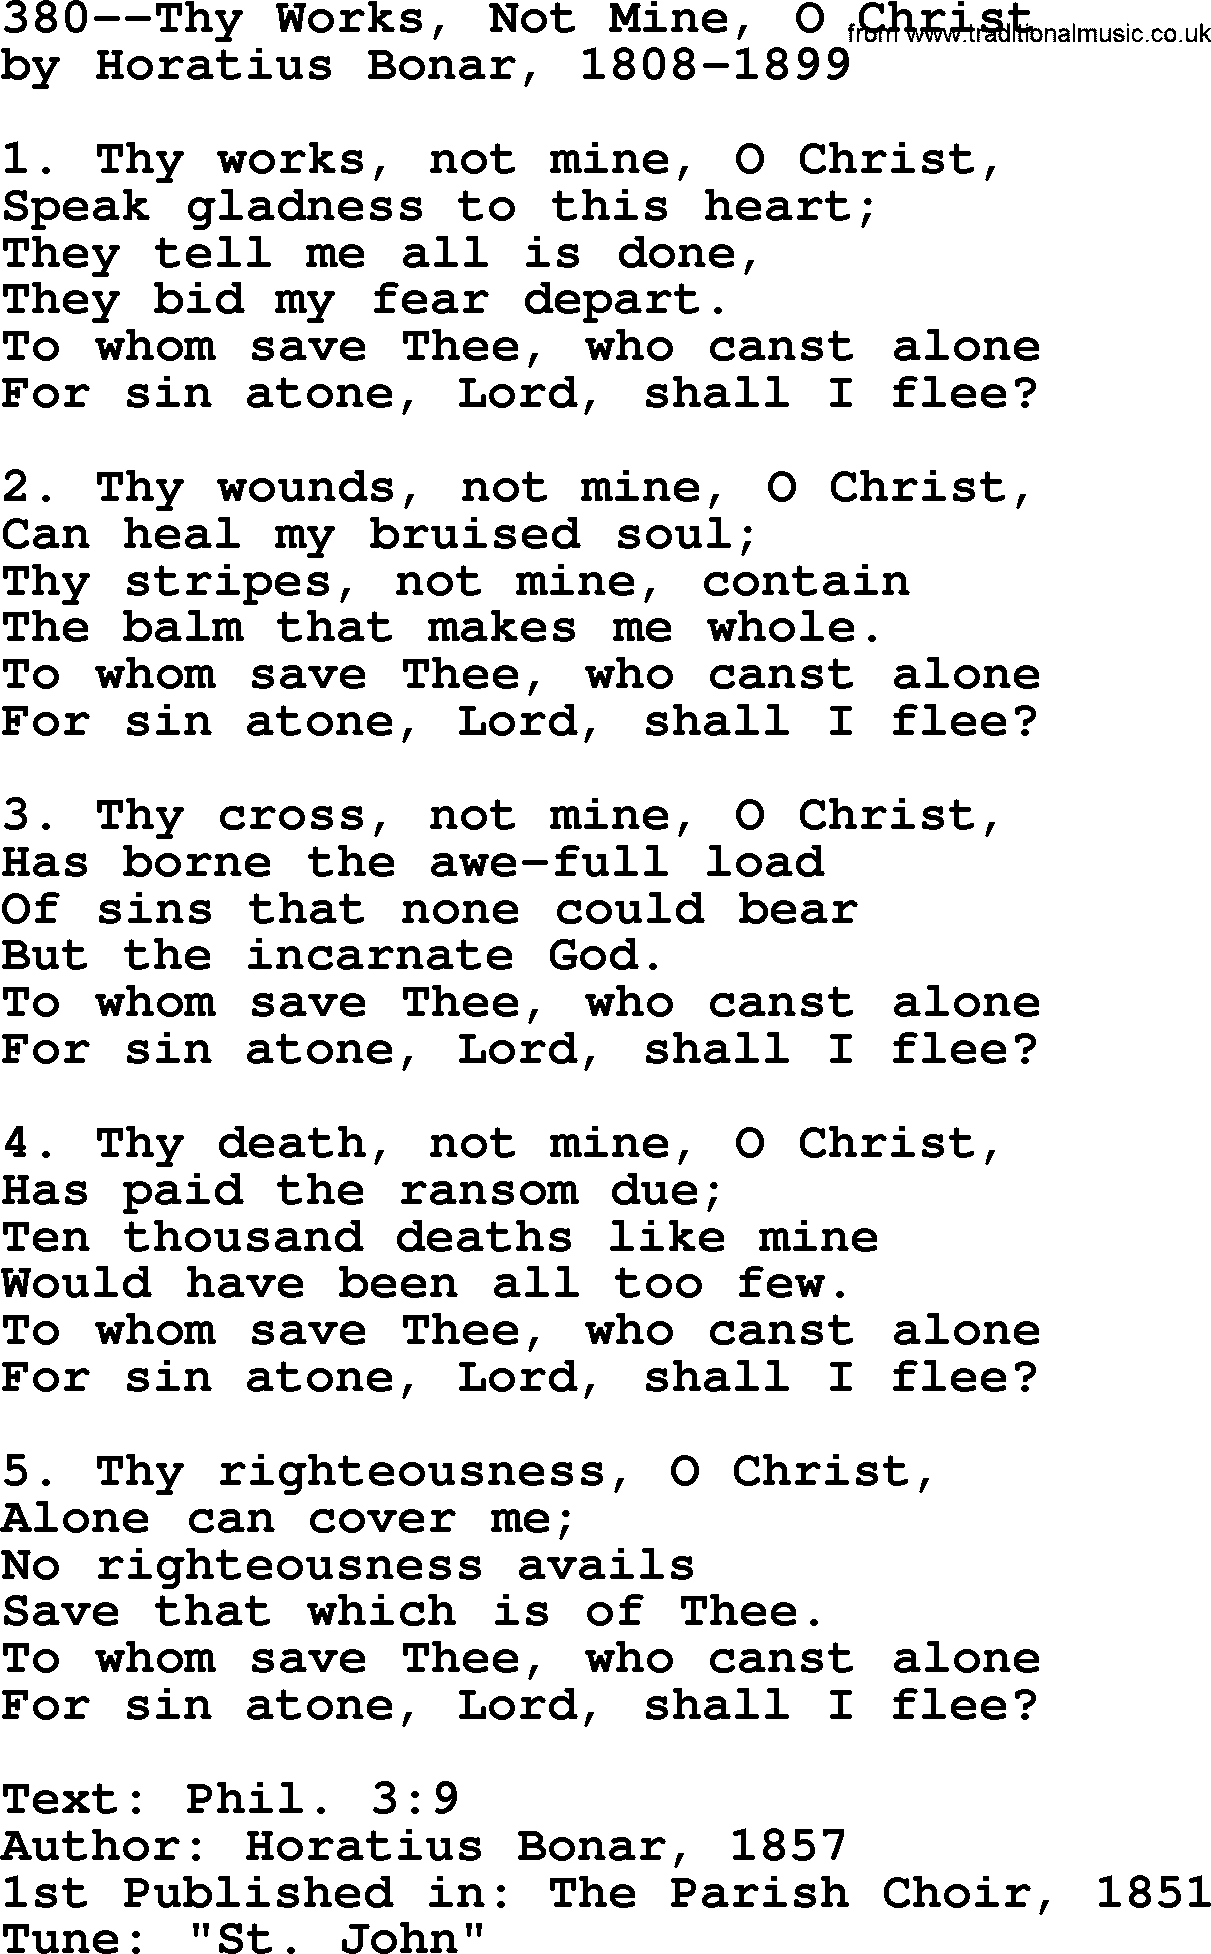 Lutheran Hymn: 380--Thy Works, Not Mine, O Christ.txt lyrics with PDF